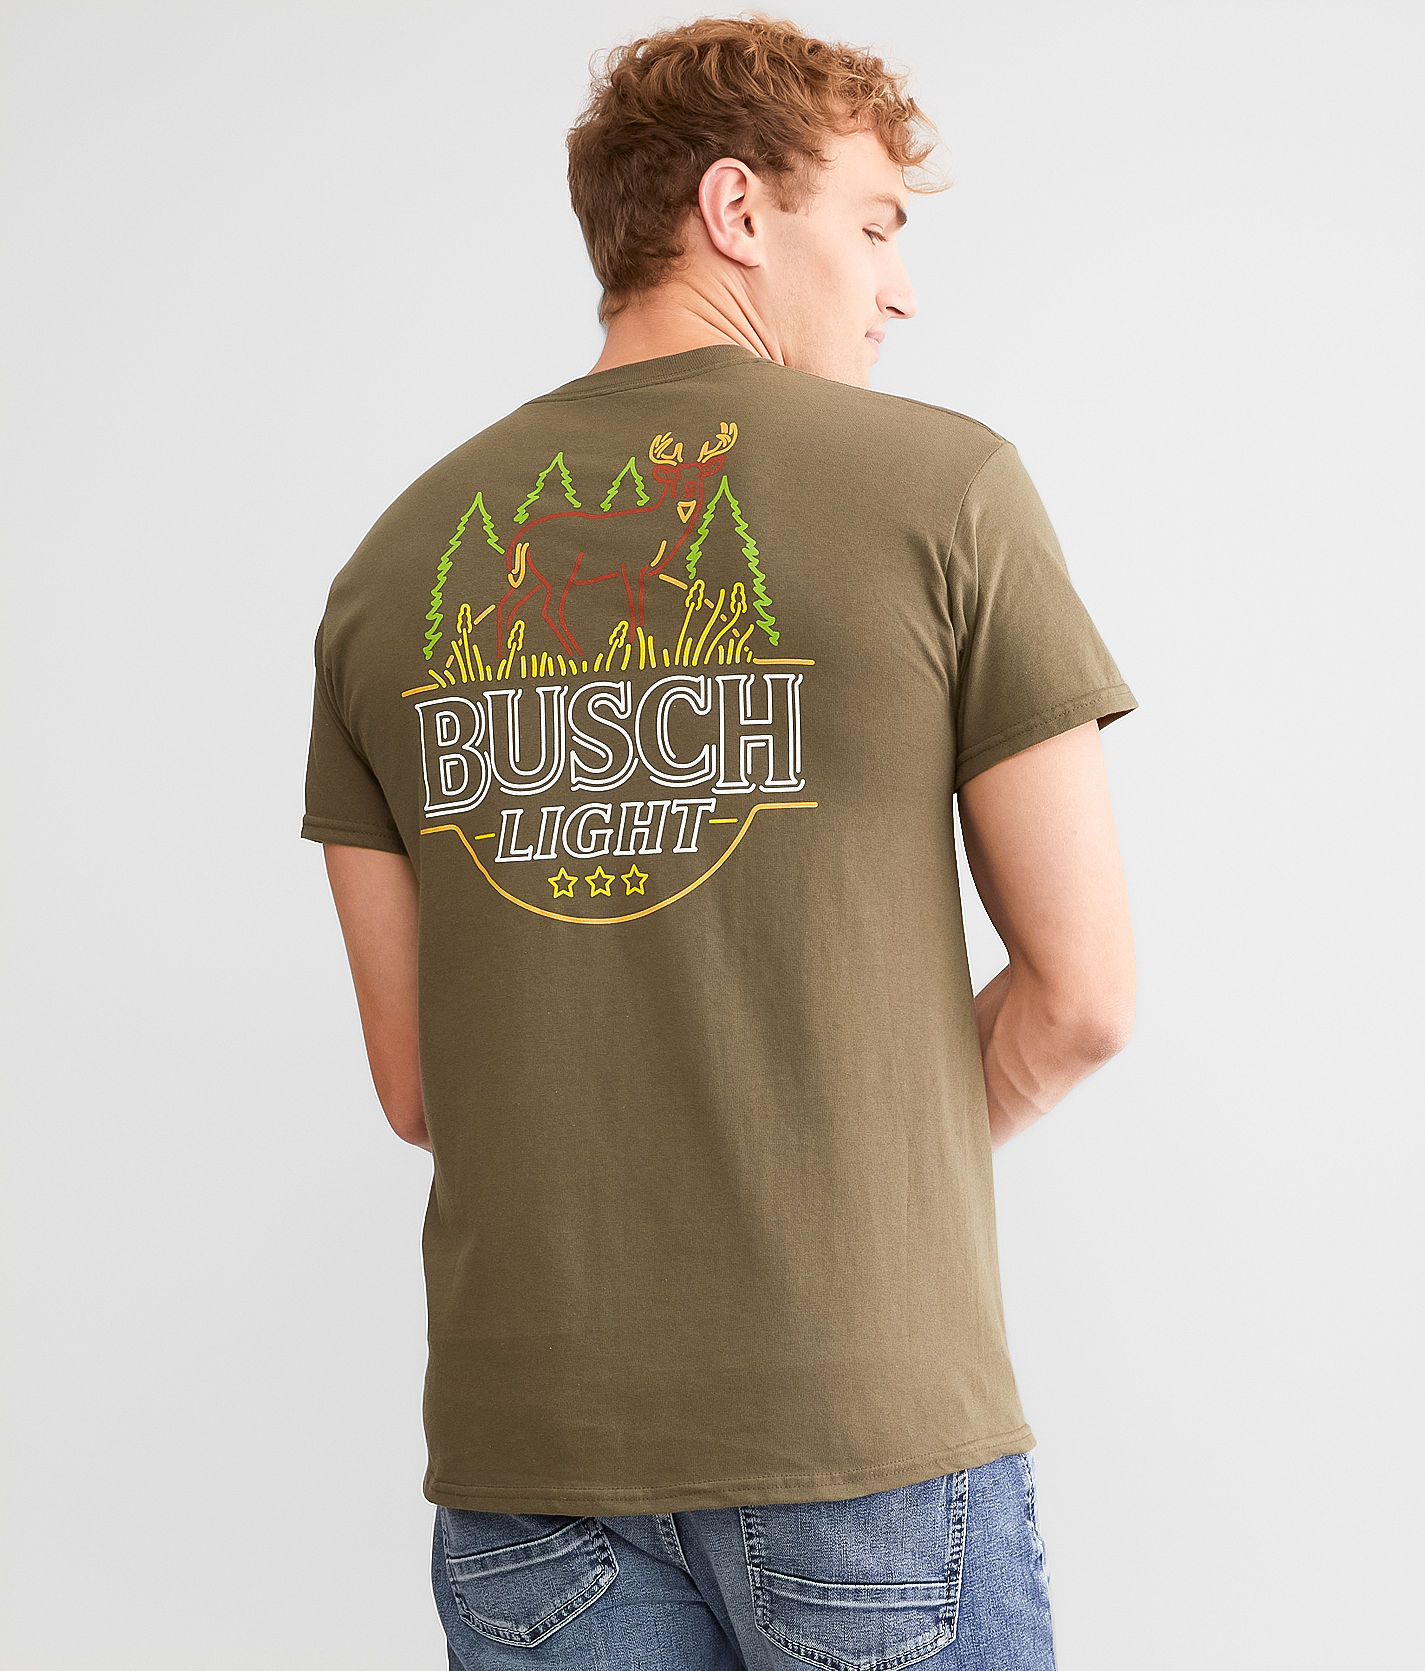 - | City Light® in Brew T-Shirts Olive Men\'s T-Shirt Busch Buckle Deer